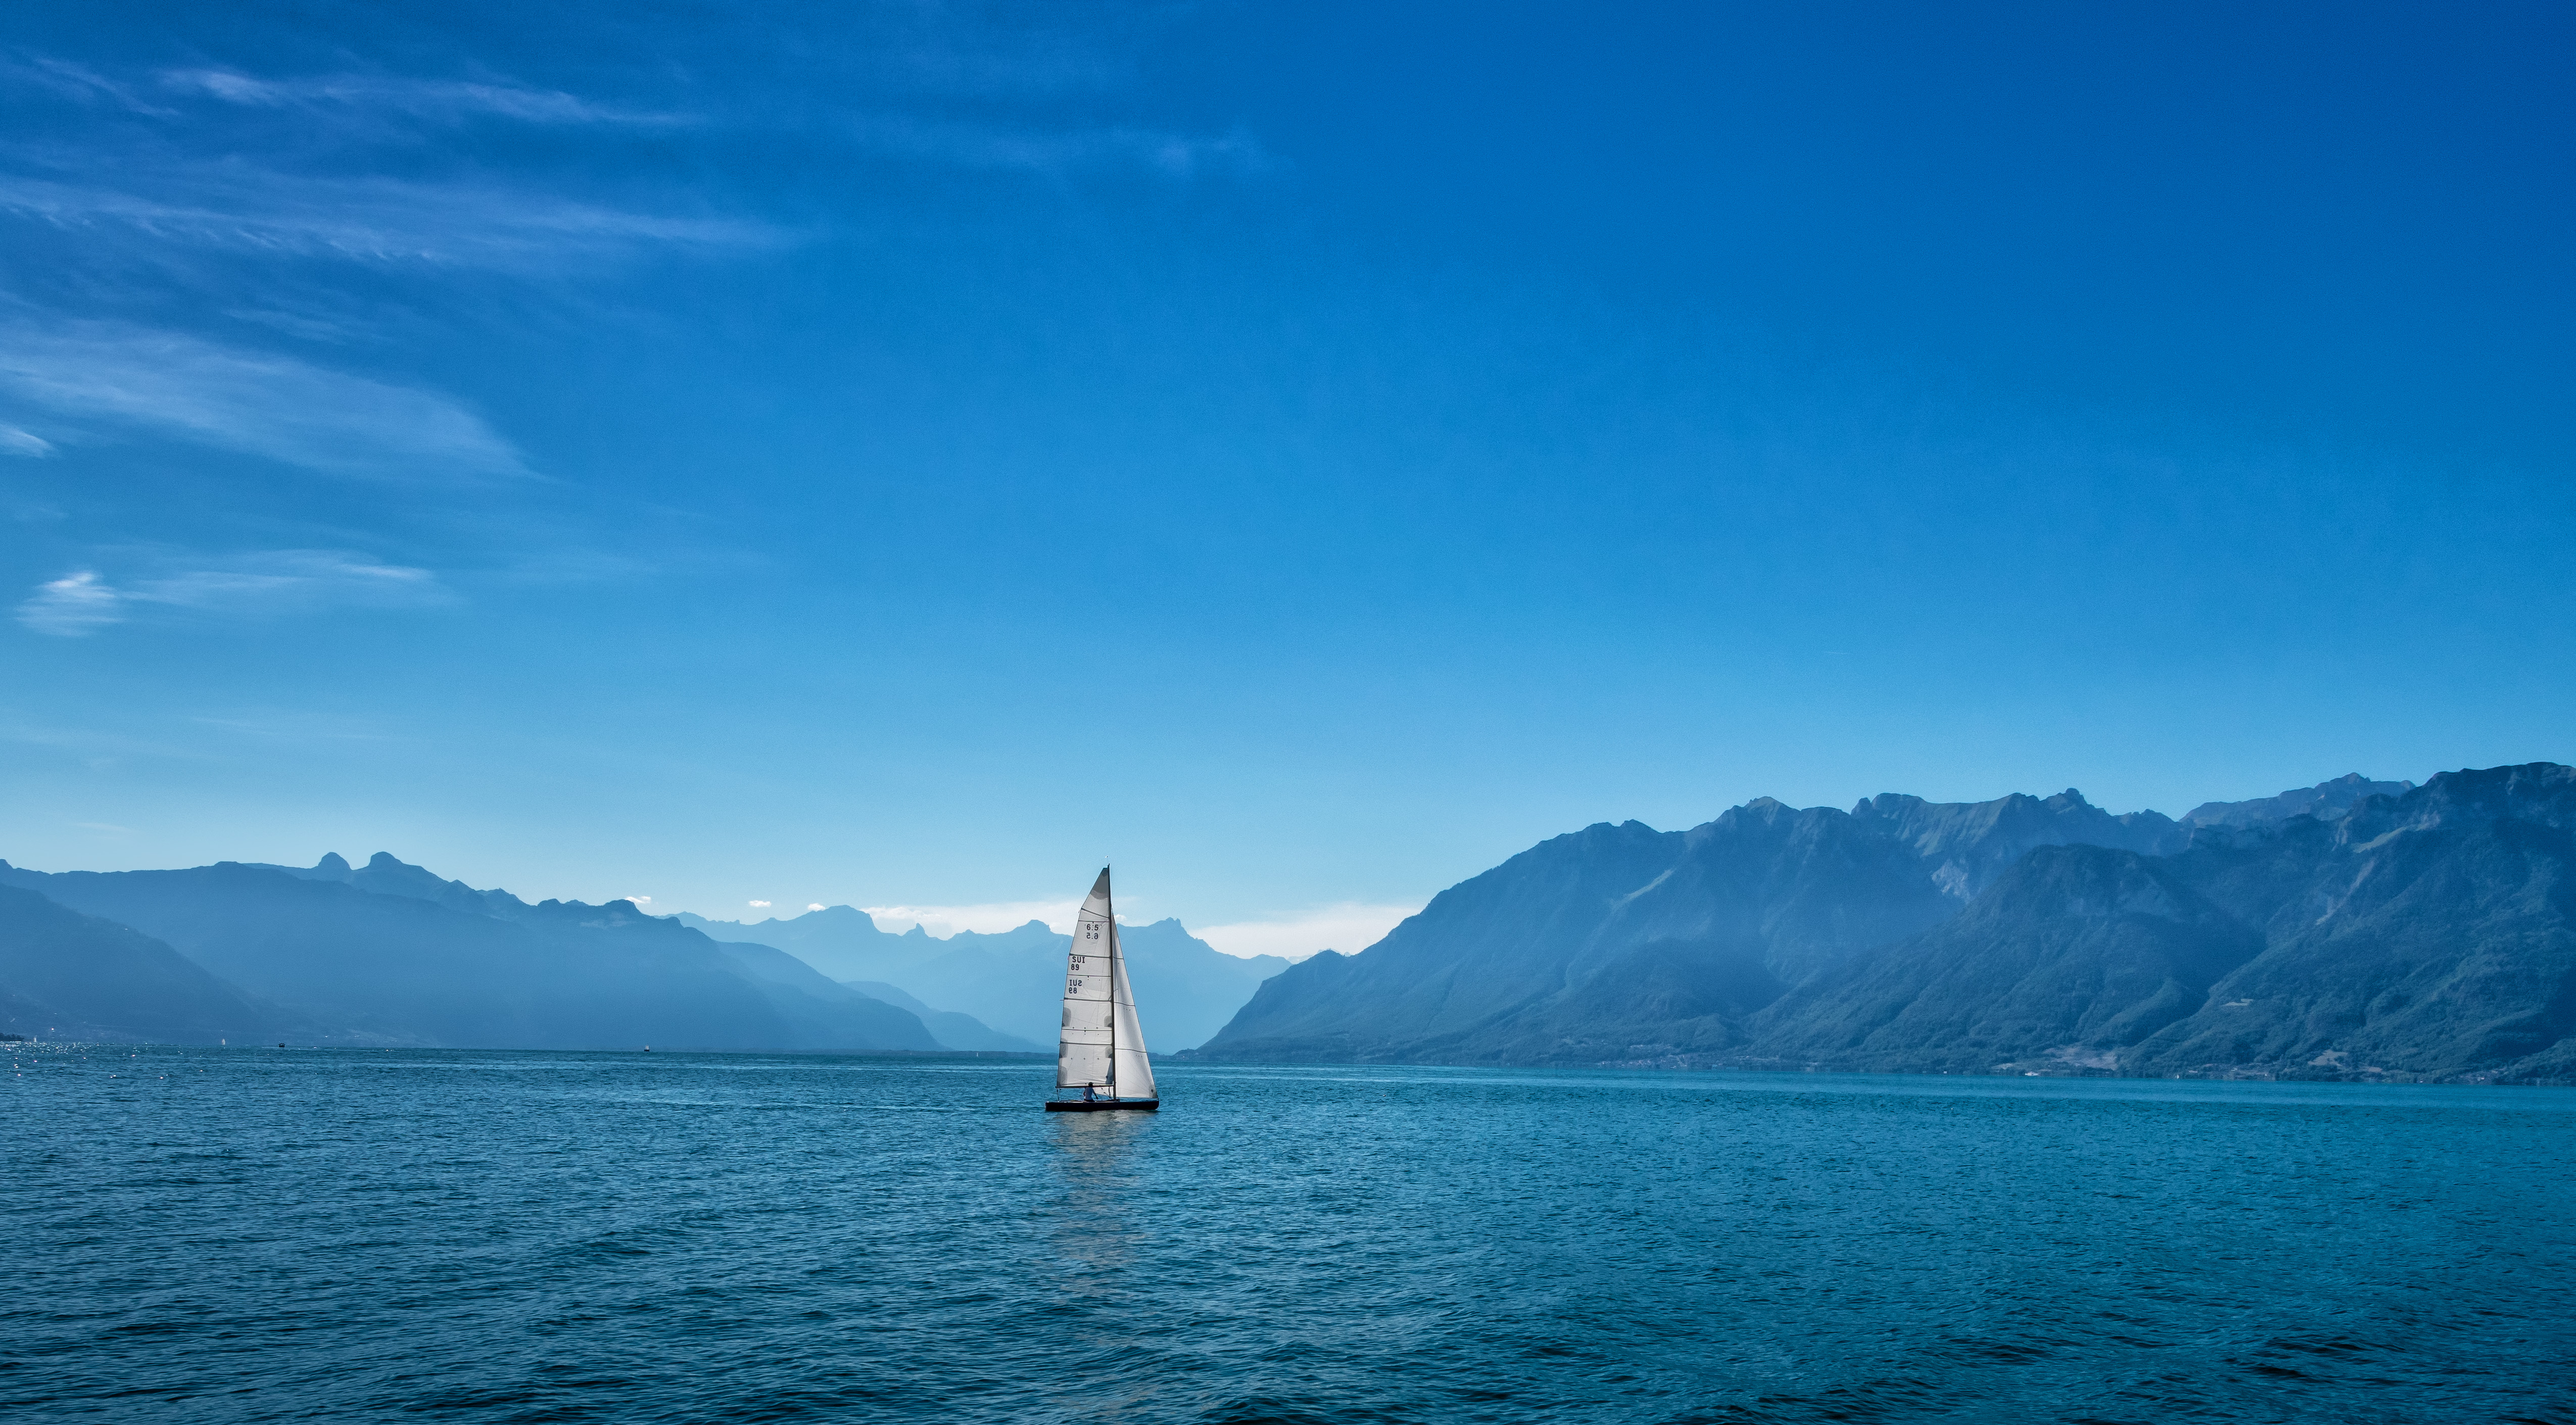 nature, mountains, sailboat, sea, sailfish, ship Full HD